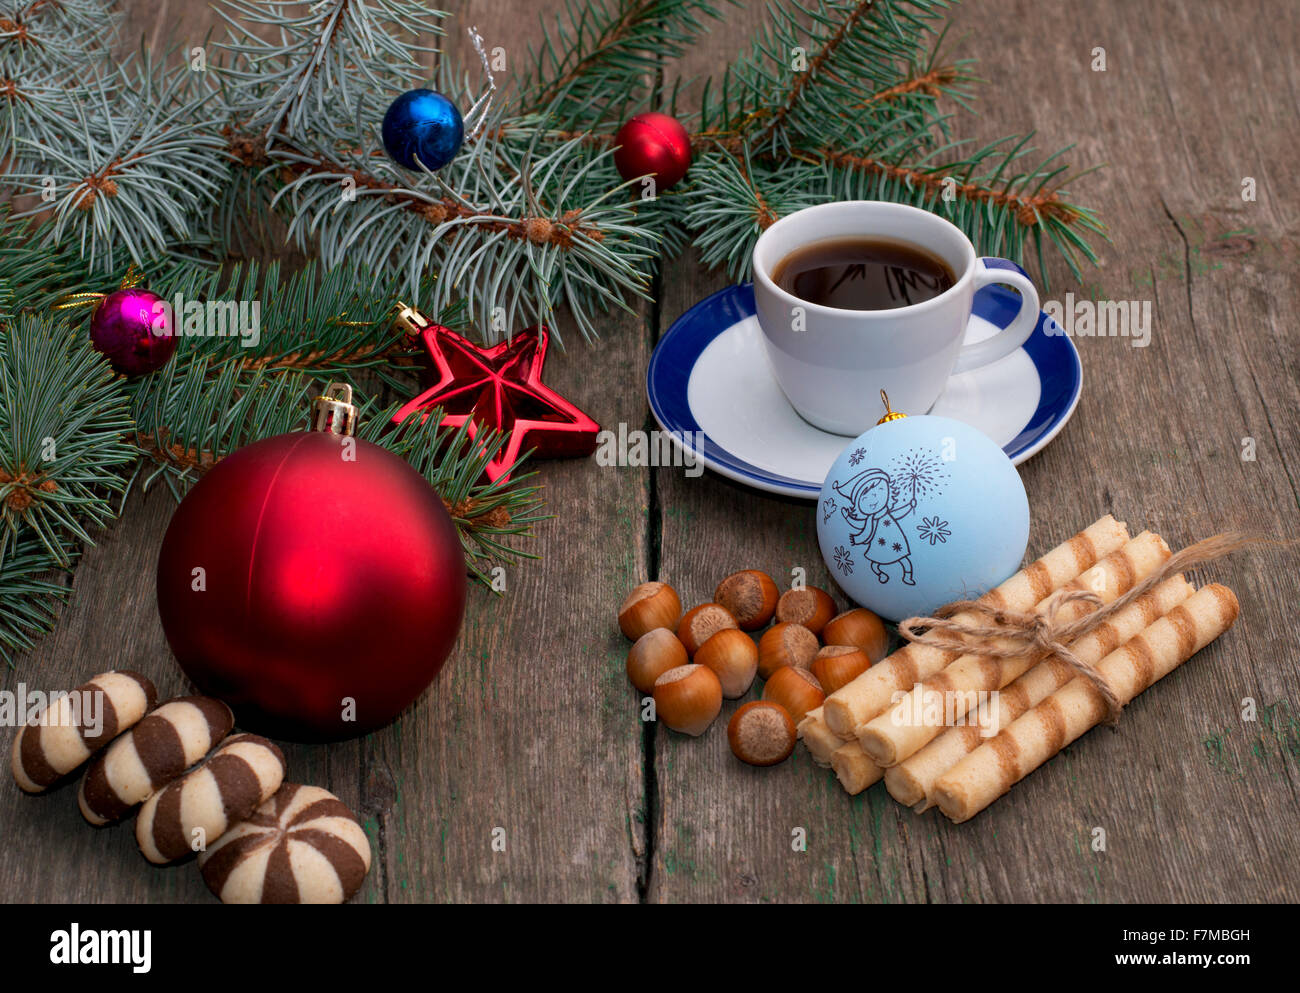 La direction générale de sapins de Noël avec des décorations de l'arbre, café, pâtisseries et différentes nucule, sujet holidays Banque D'Images